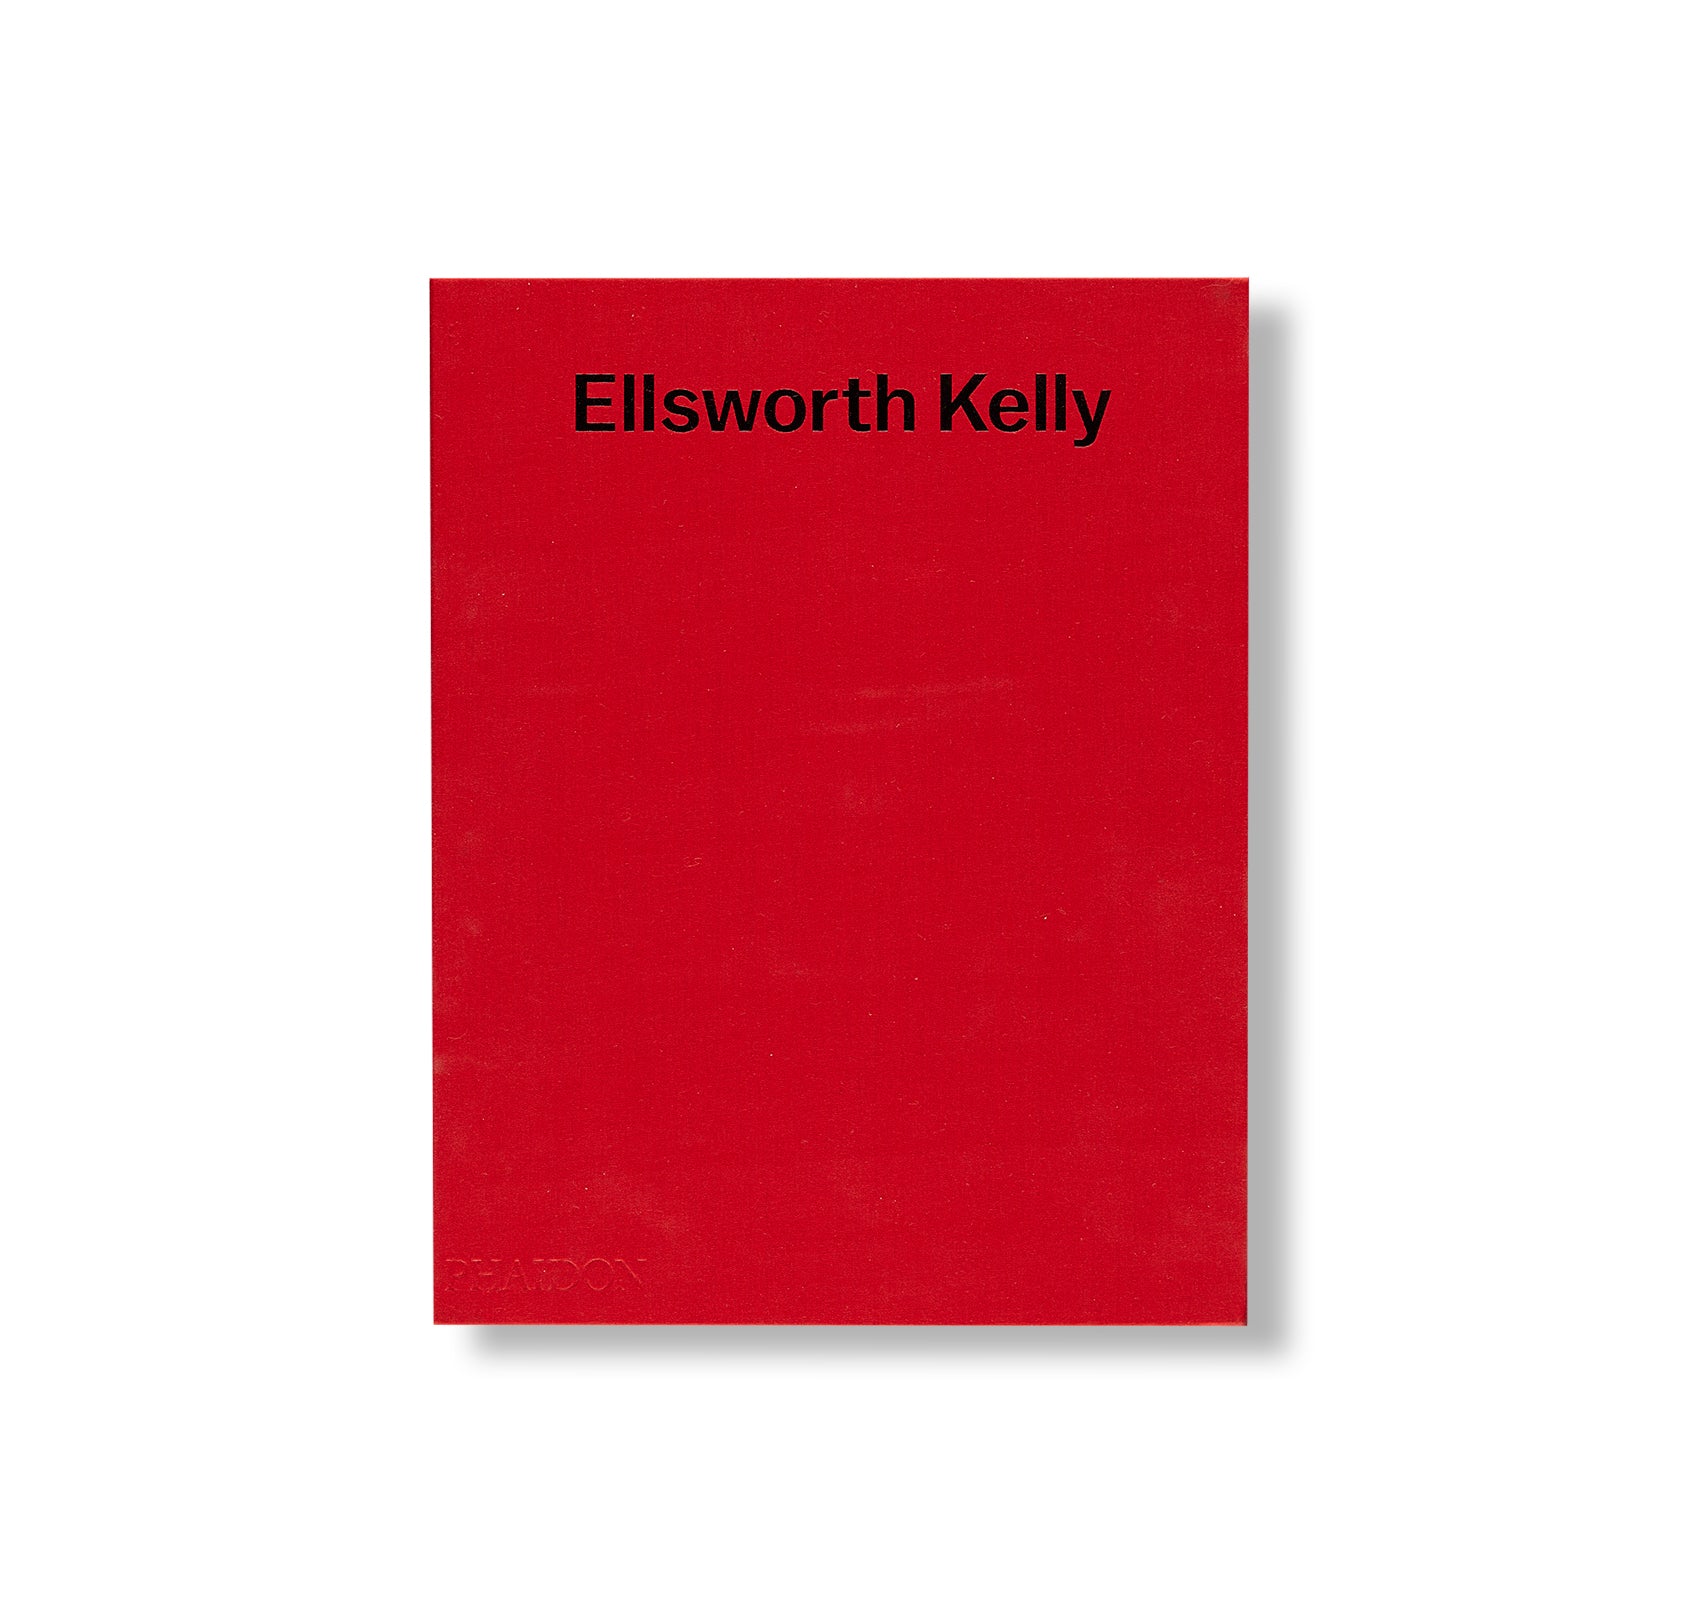 ELLSWORTH KELLY (2015) by Ellsworth Kelly